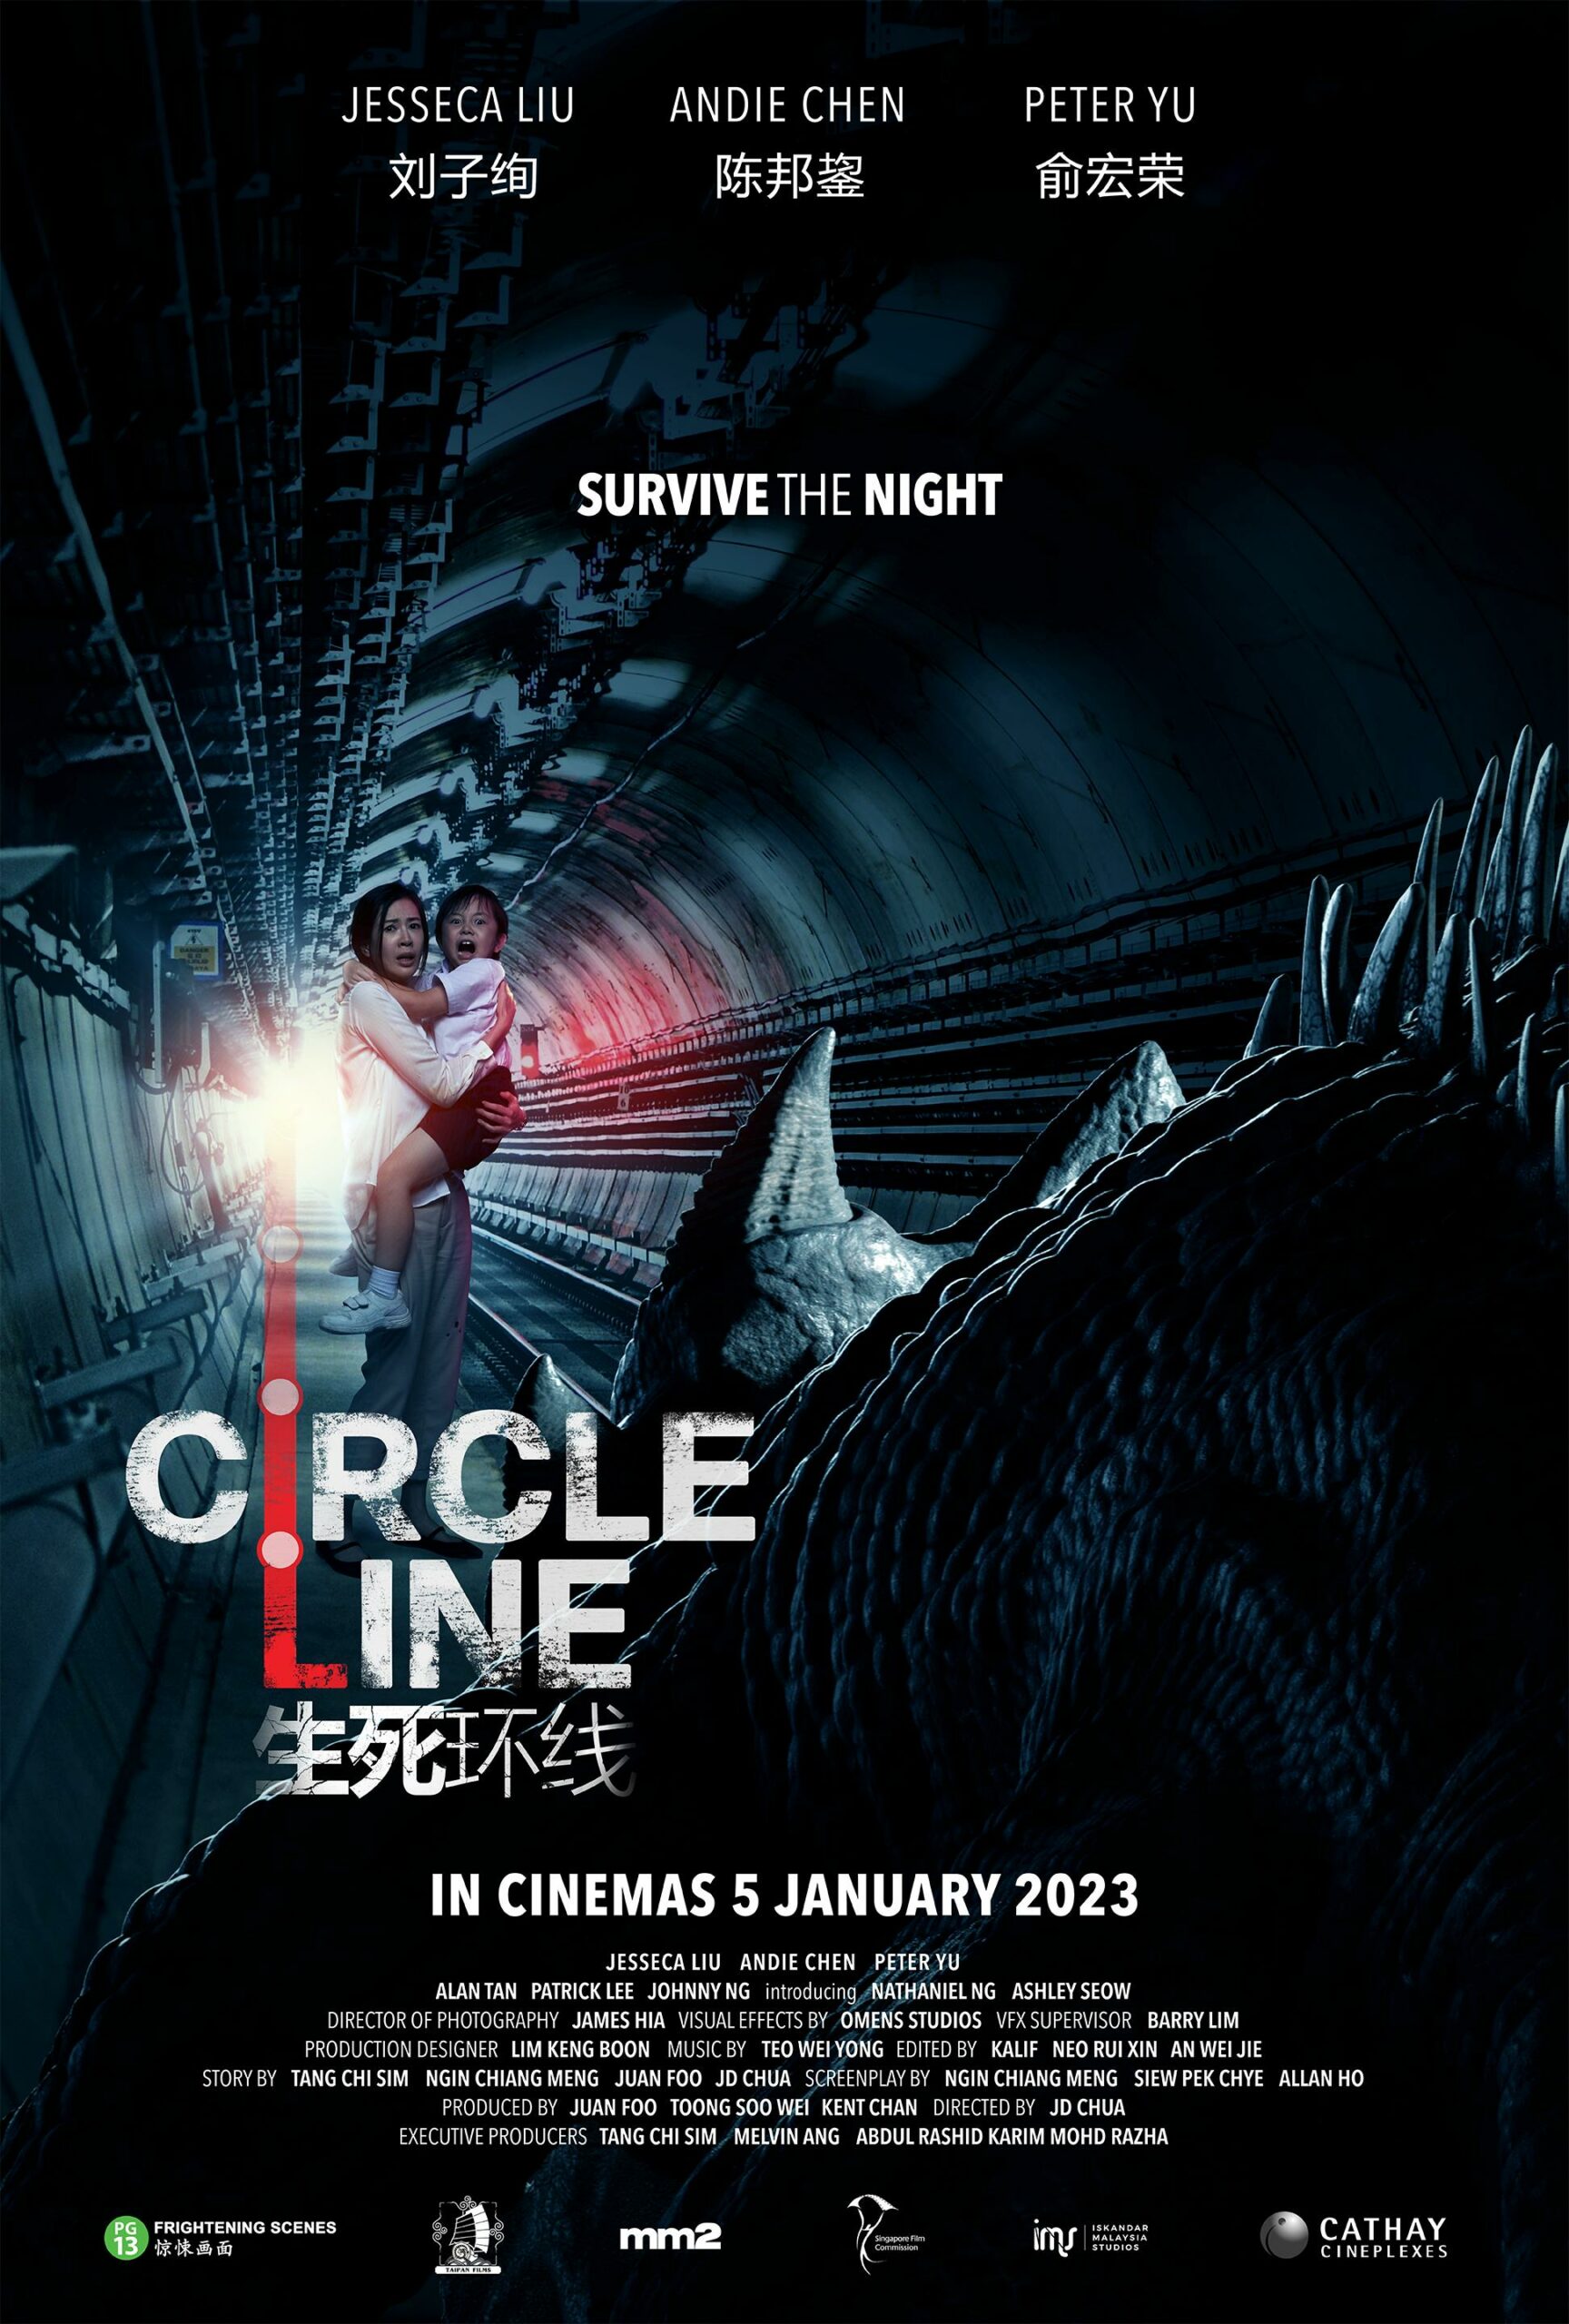 ดูหนังใหม่ CIRCLE LINE 2023 doomovie-hd